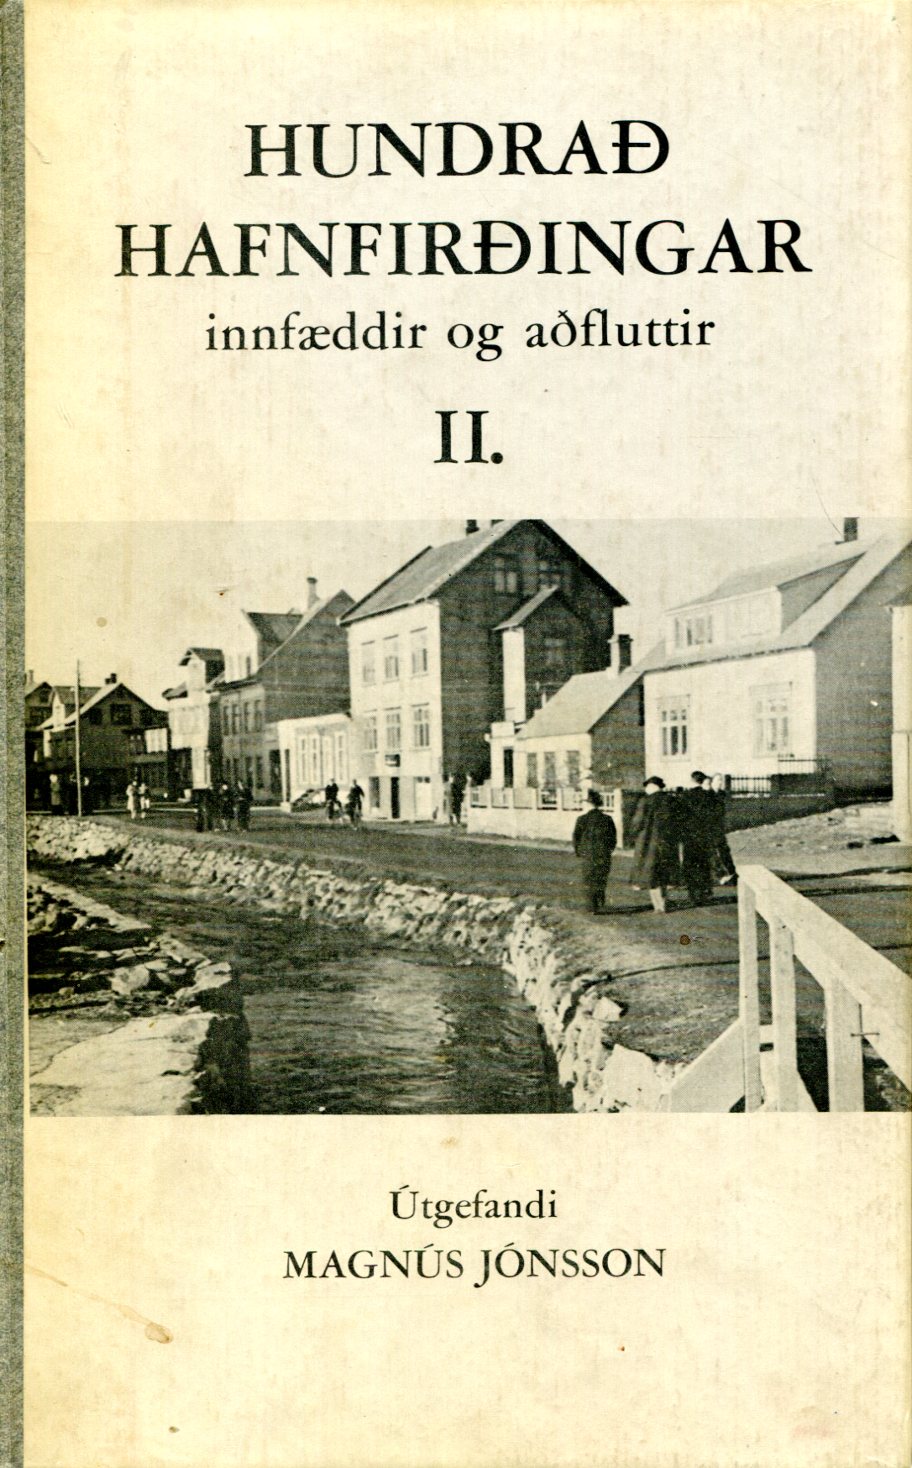 Hundrað Hafnfirðingar innfæddir og aðfluttir II innfæddir og aðfluttir - Magnús Jónsson